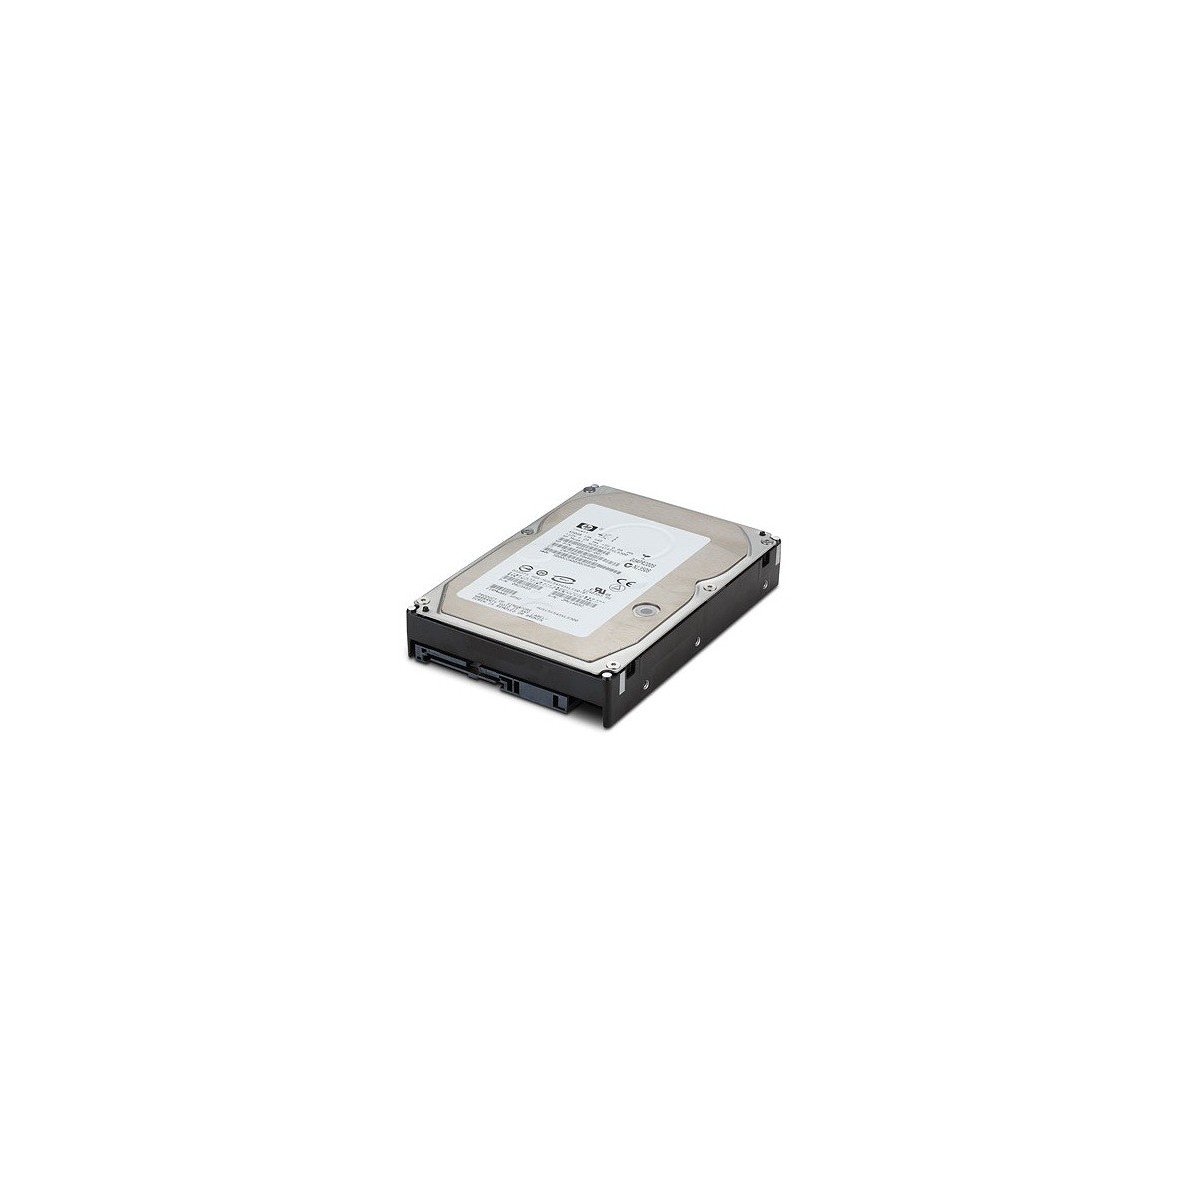 HPE SAS HDD 900GB - 2.5" - 900 GB - 10000 RPM